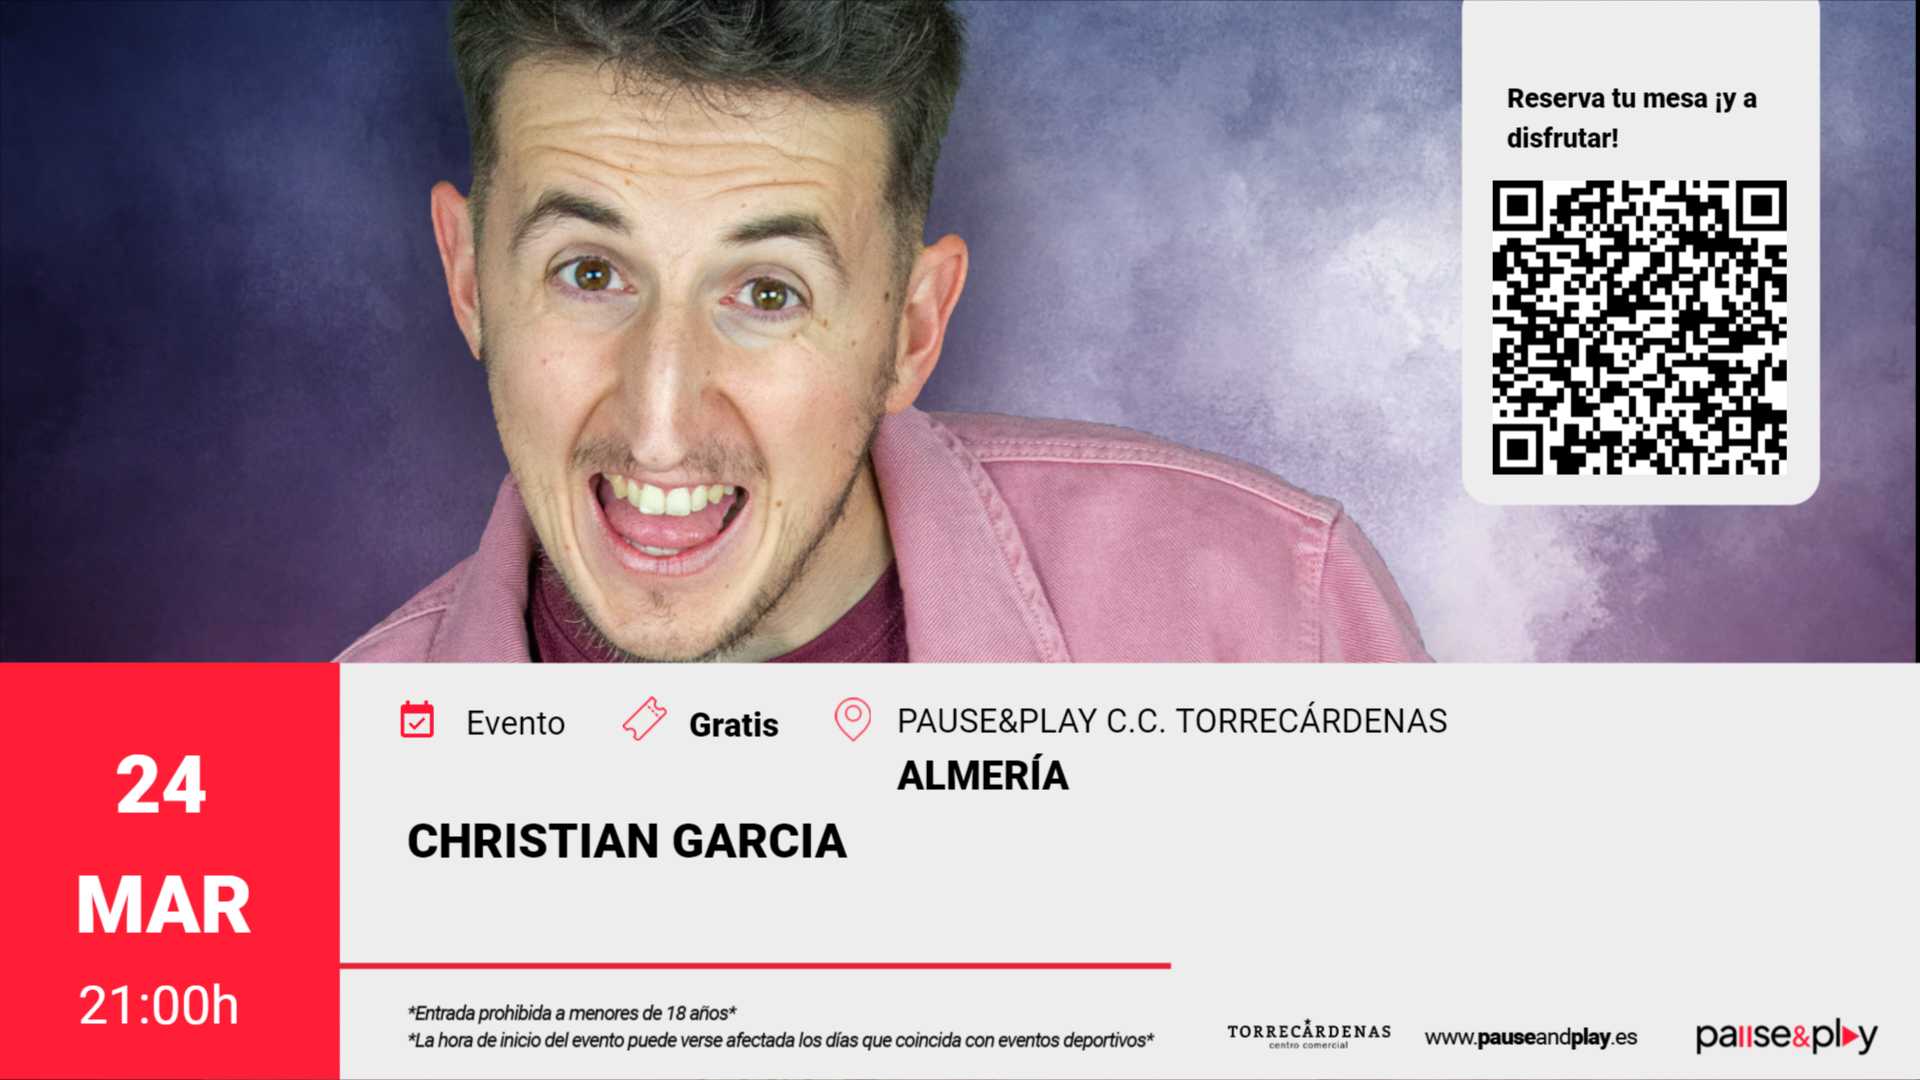 Monólogo Christian Garcia Pause&Play C.C. Torrecárdenas (Almeria)